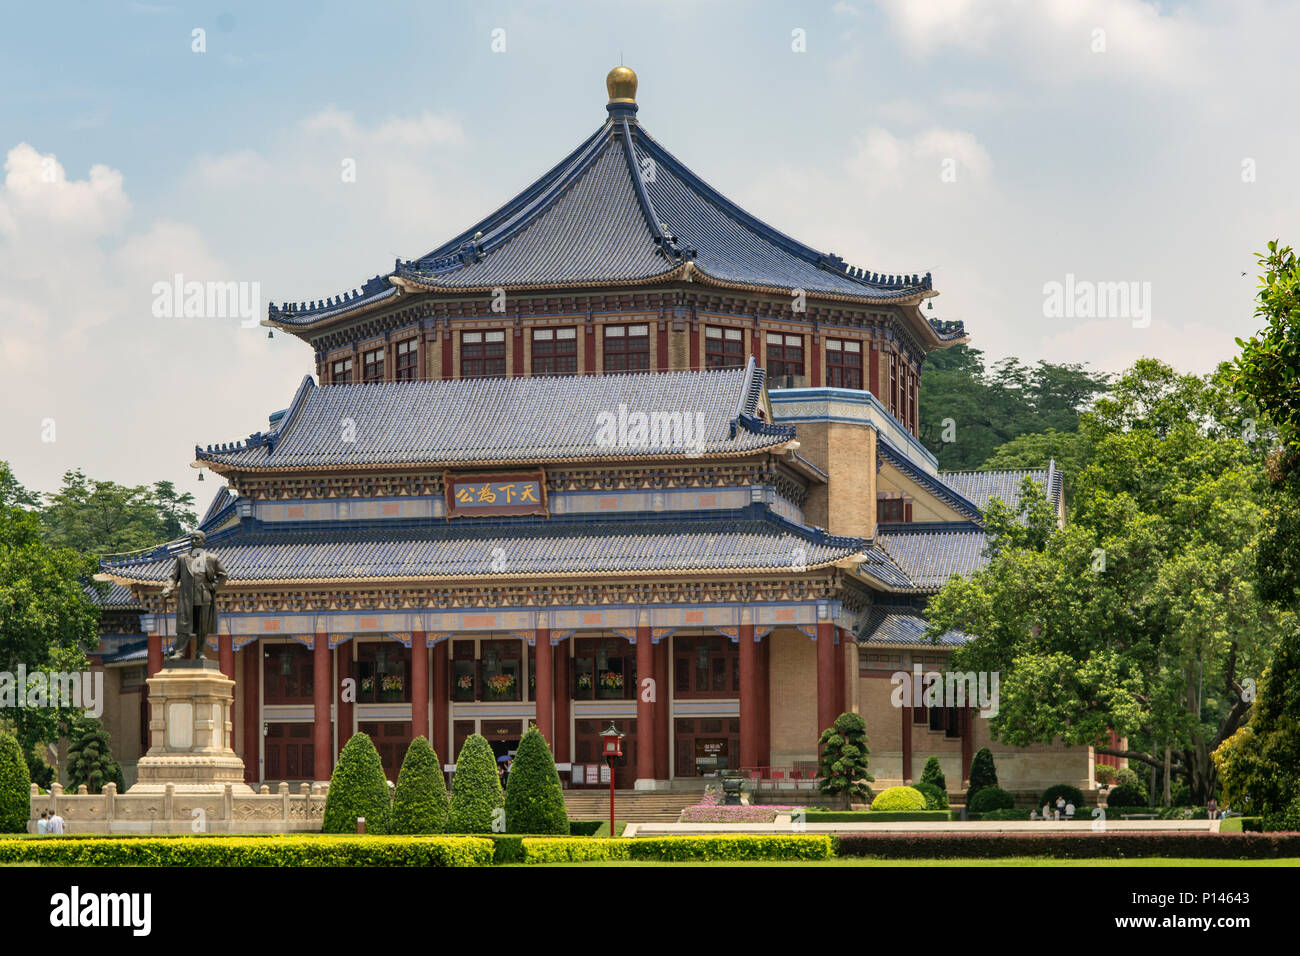 Sun Yat-sen Memorial Hall, Guangzhou, China Stock Photo